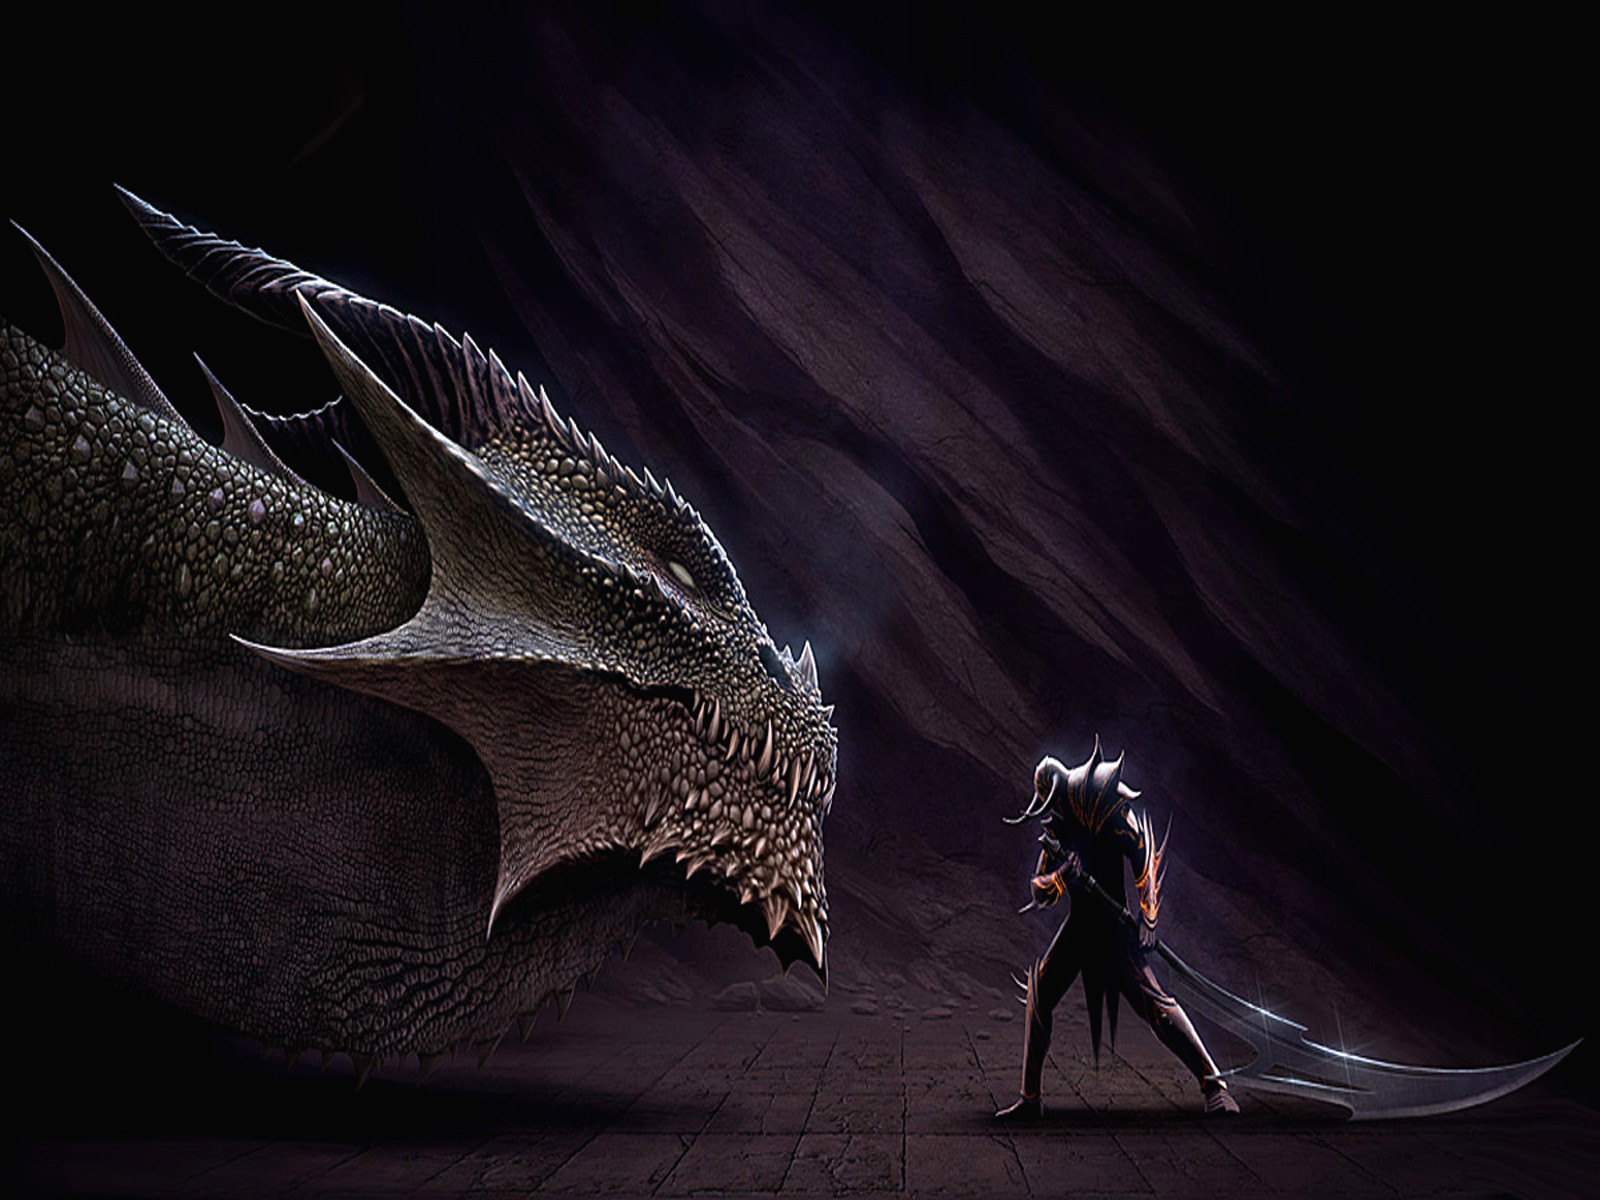 dragoni wallpaper hd,drago,cg artwork,personaggio fittizio,buio,creatura mitica